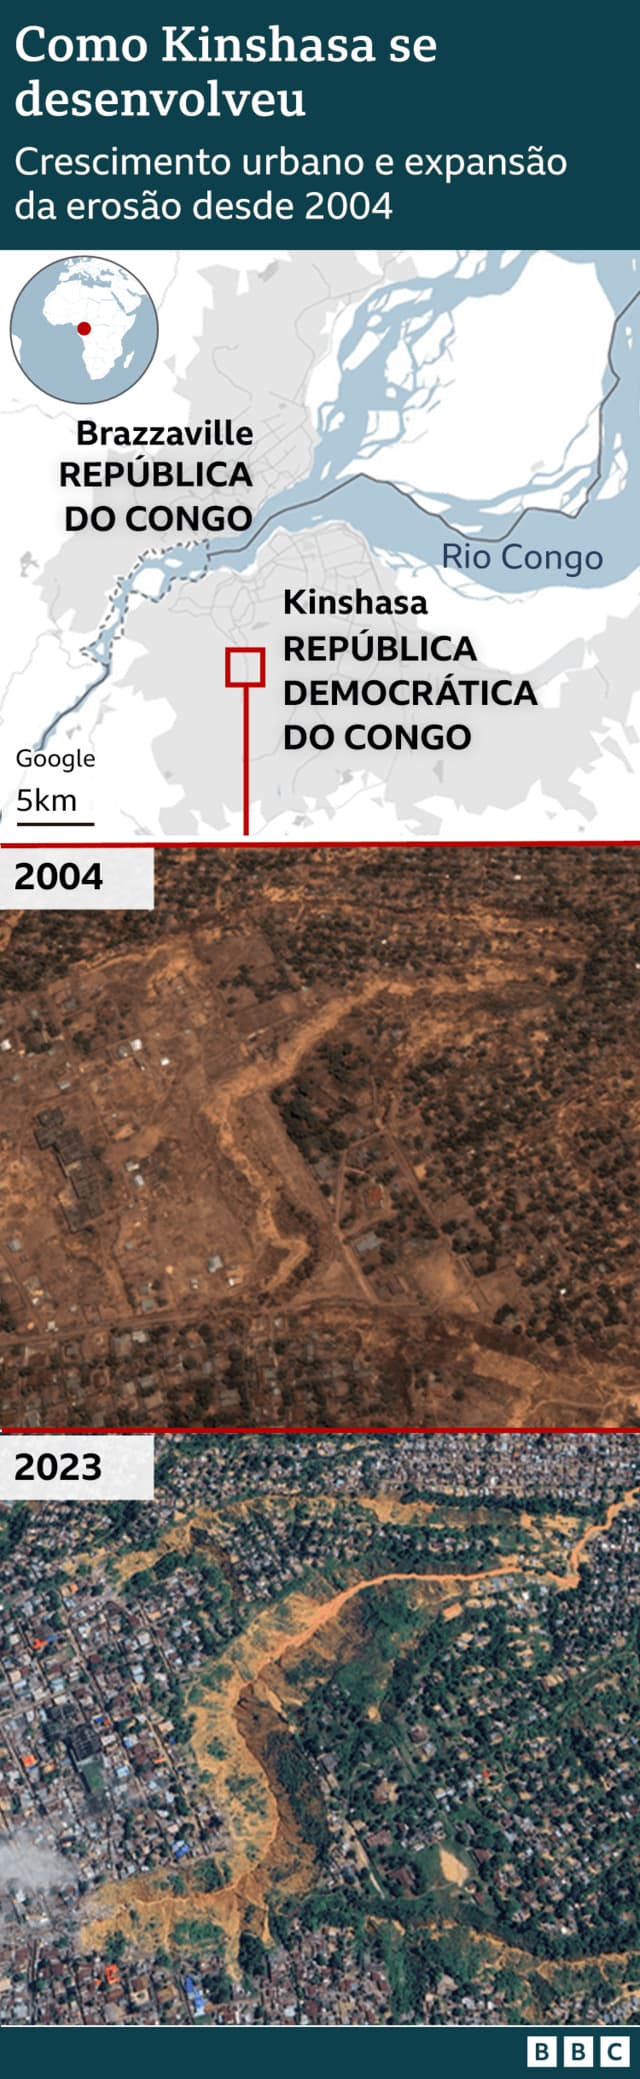 Imagens de satélite mostram Kinshasa em 2004 e 2023